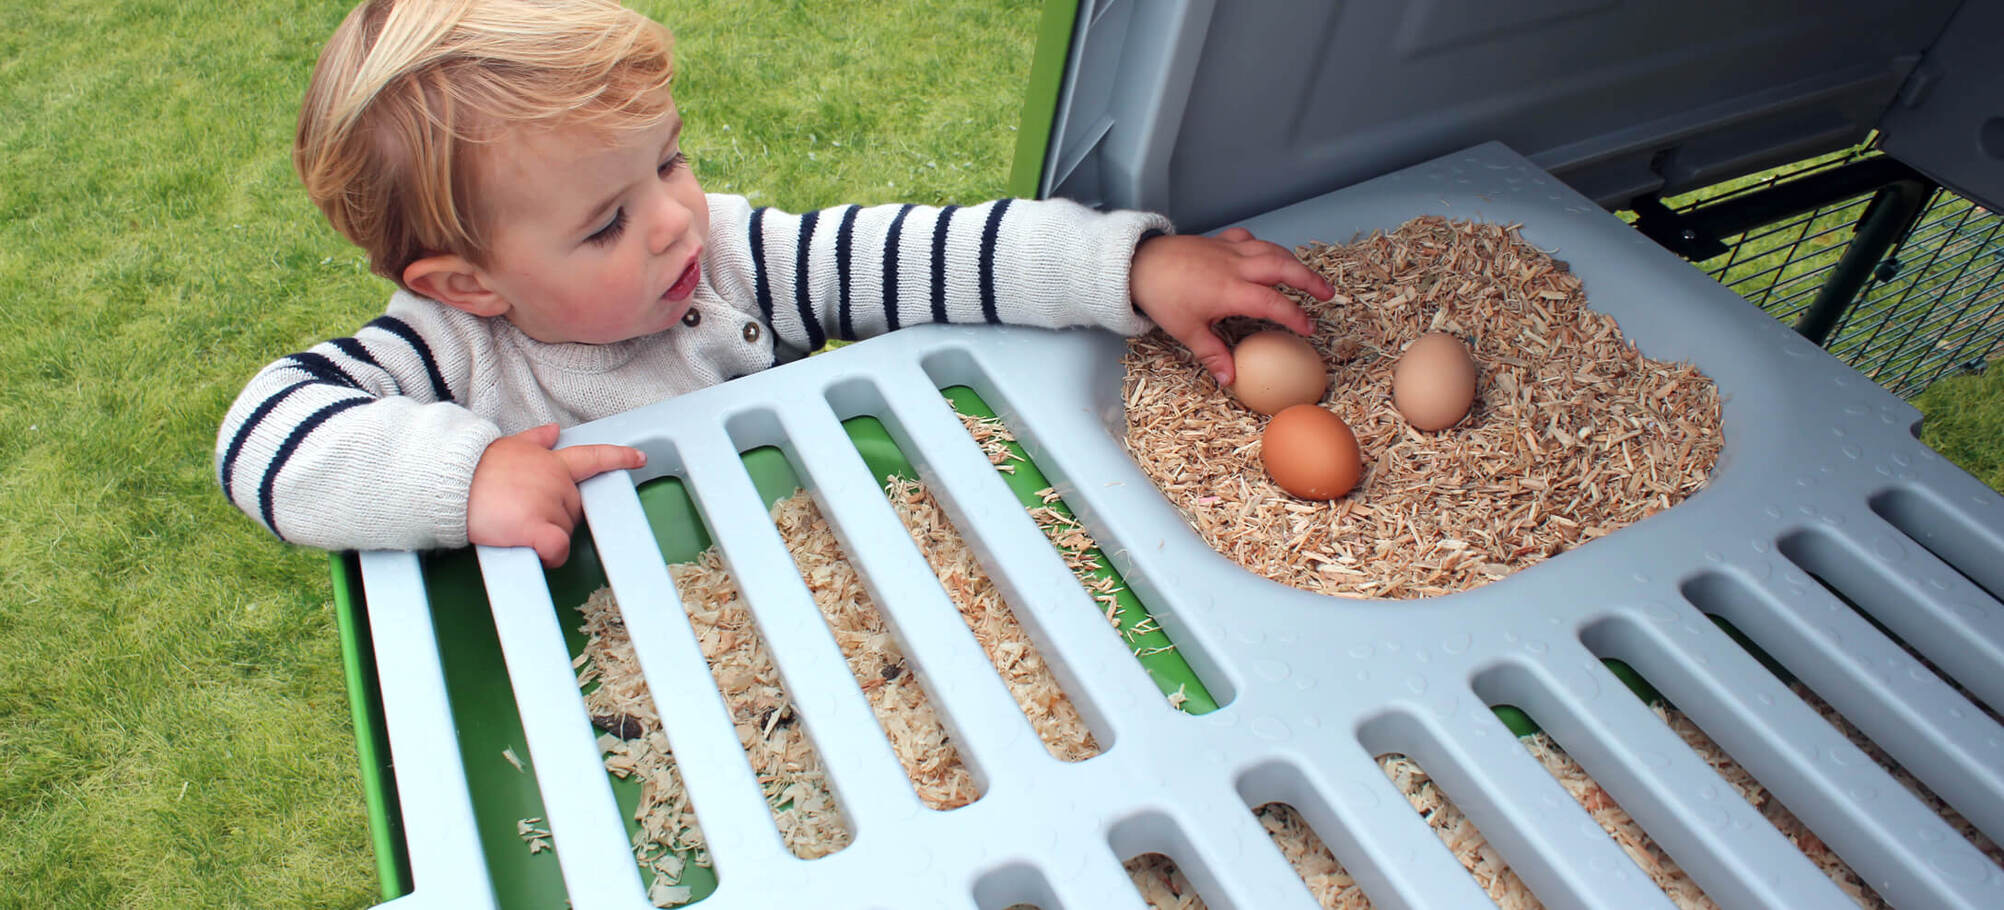 Ein Junge sammelt Eier aus dem Eglu-Nistkasten